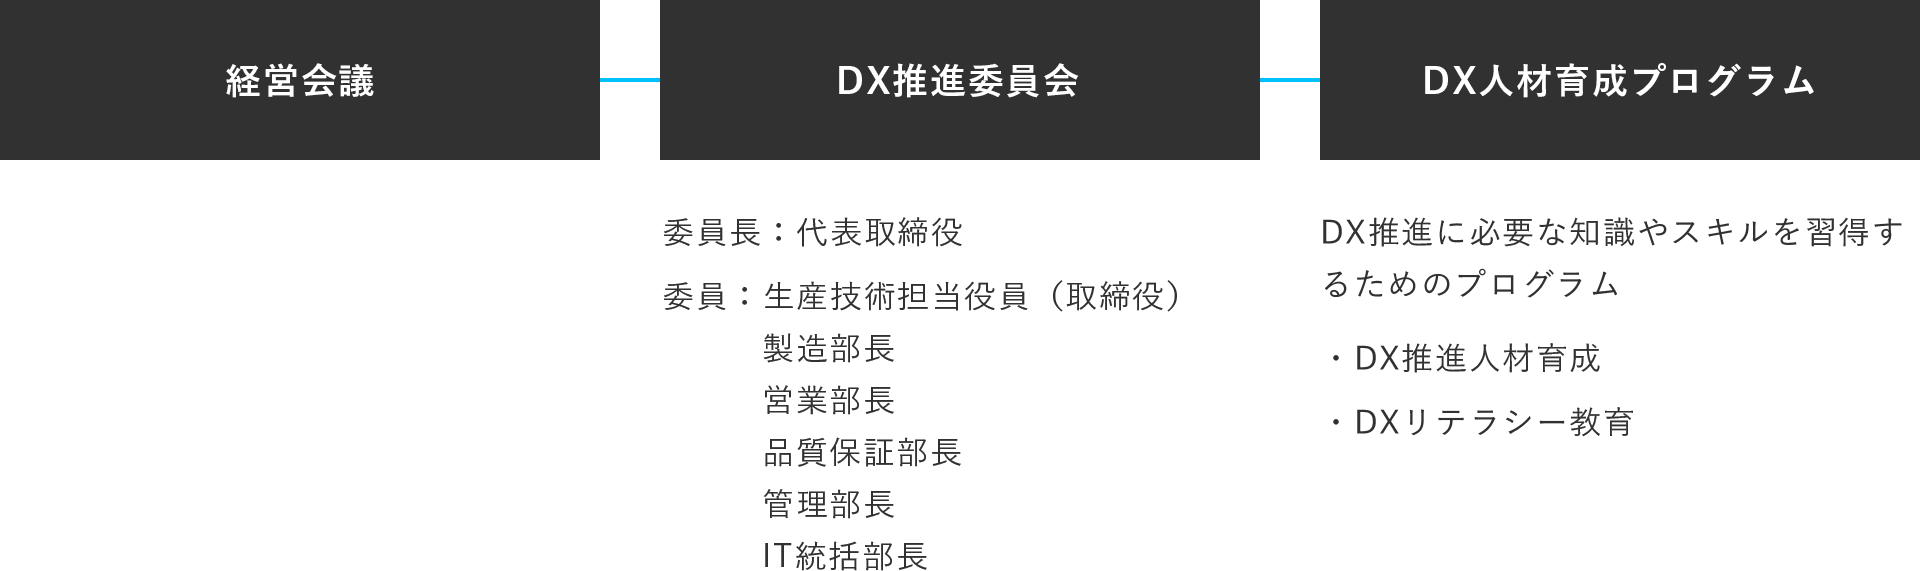 経営会議 DX推進委員会 DX人材育成プログラム